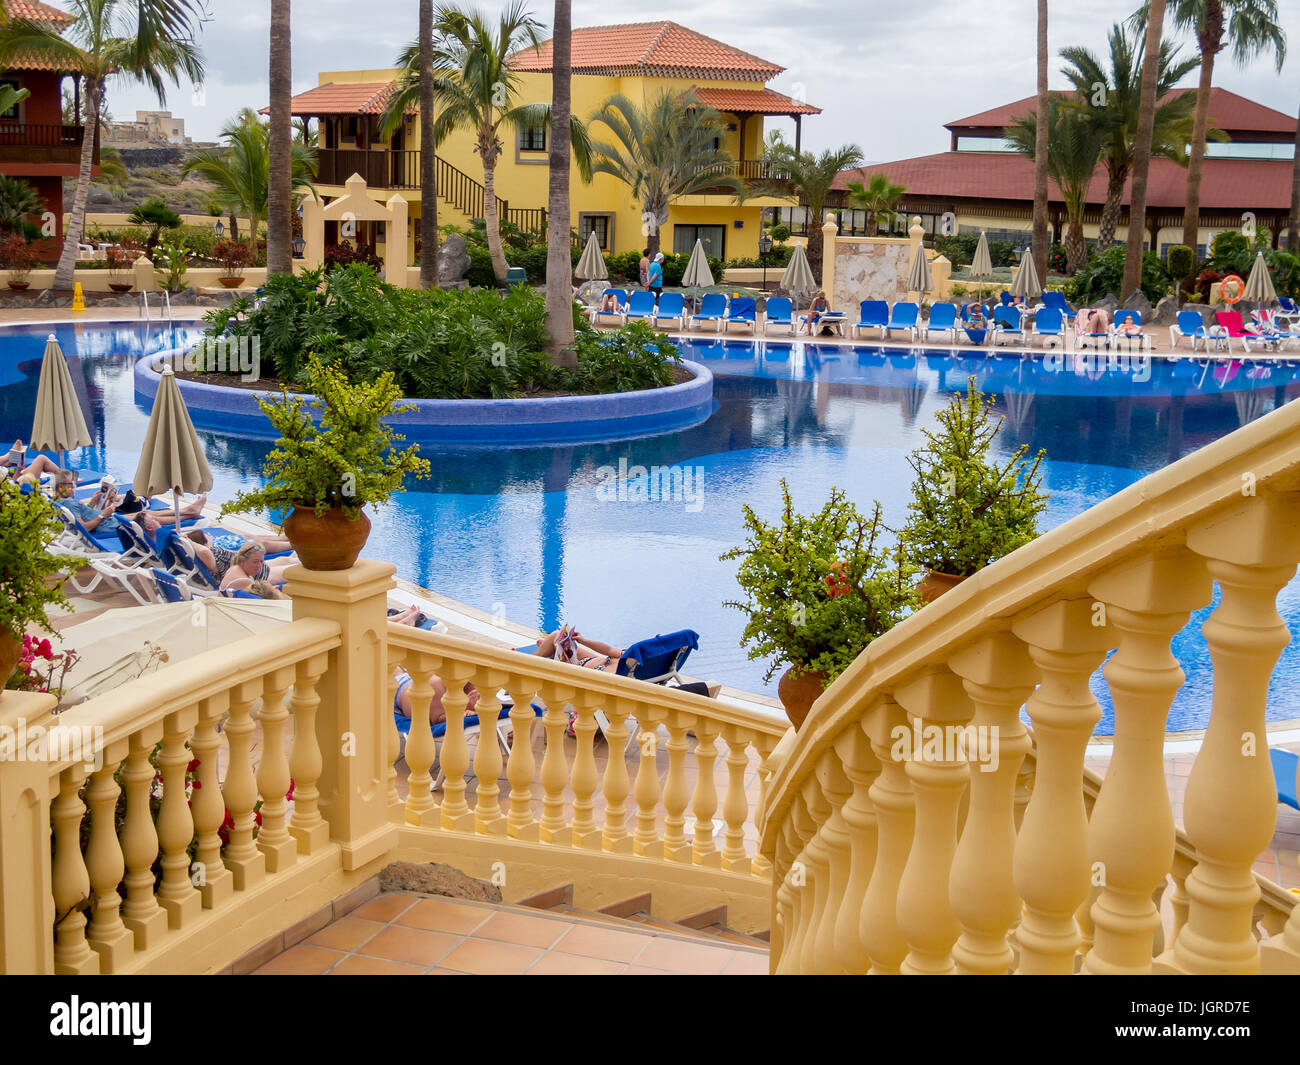 Balustrades leading to the swimming pool in the Bahia Costa Adeji Hotel in Adeji, Tenerife Stock Photo